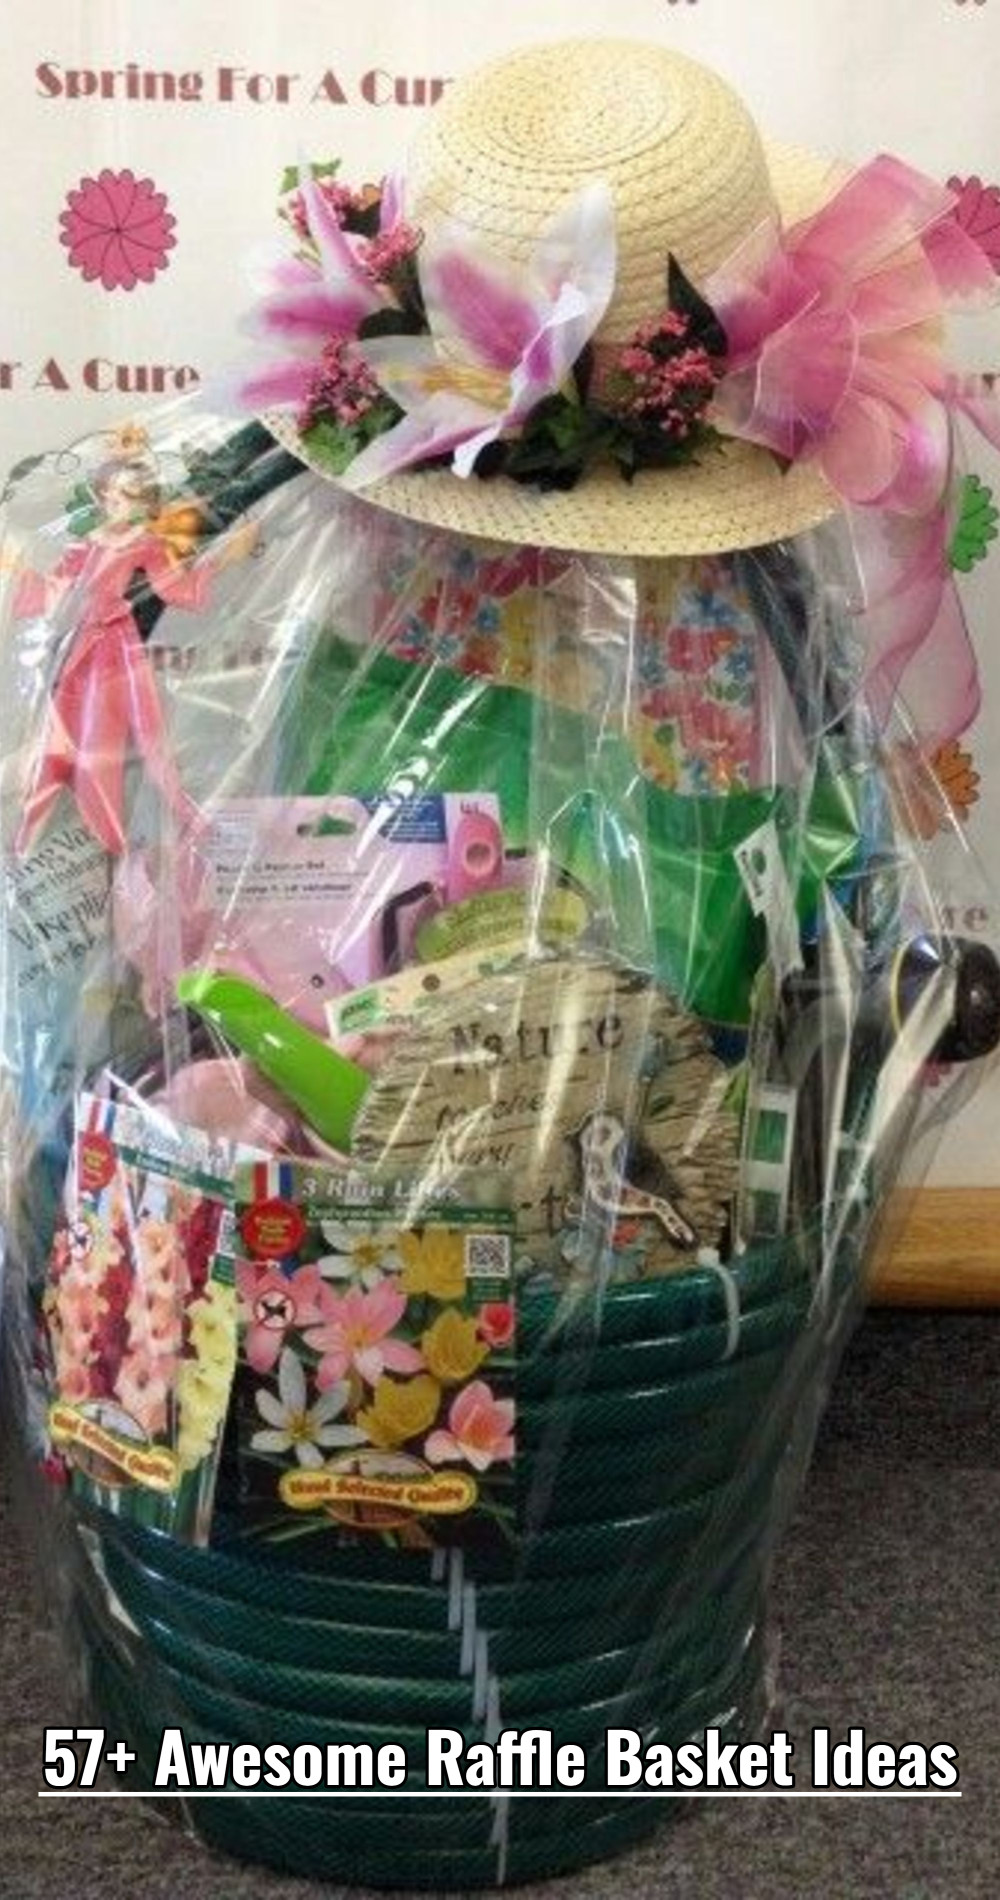 Spring Gardening Theme Auction Raffle Basket - 57+ Awesome Raffle Basket Ideas